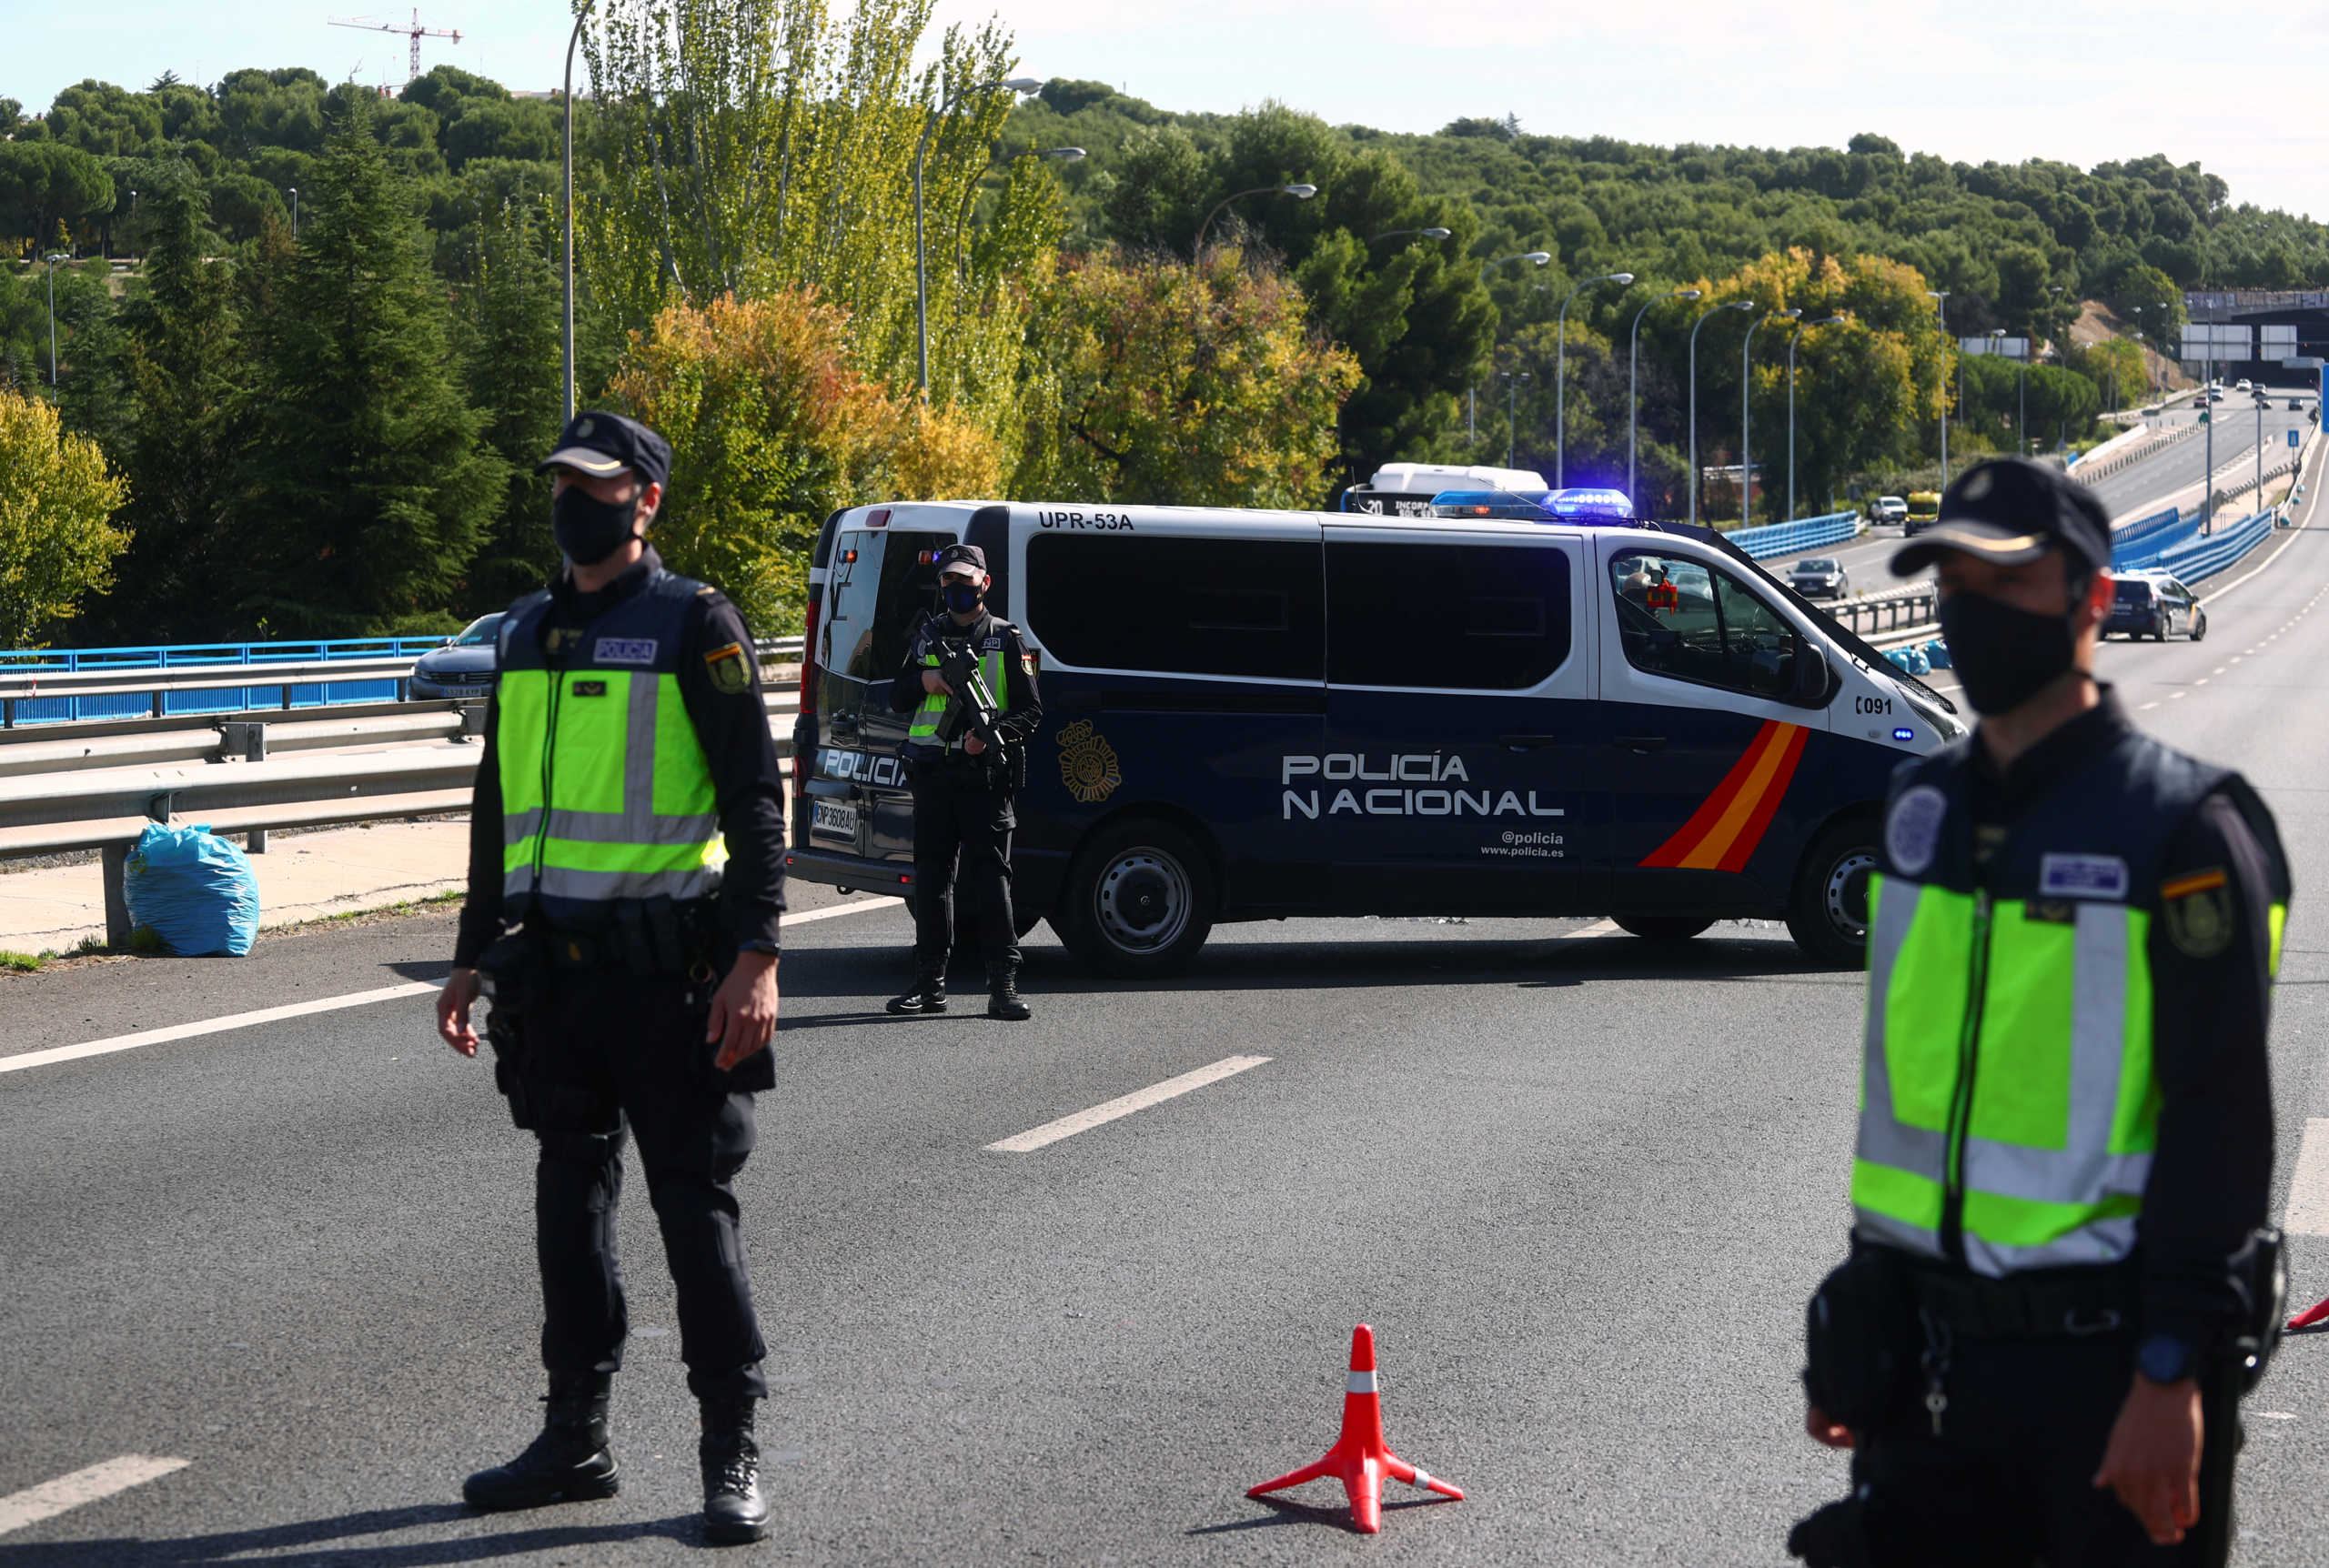 Κορονοϊός: Σε κατάσταση έκτακτης ανάγκης η Ισπανία – Επιβάλλεται απαγόρευση κυκλοφορίας